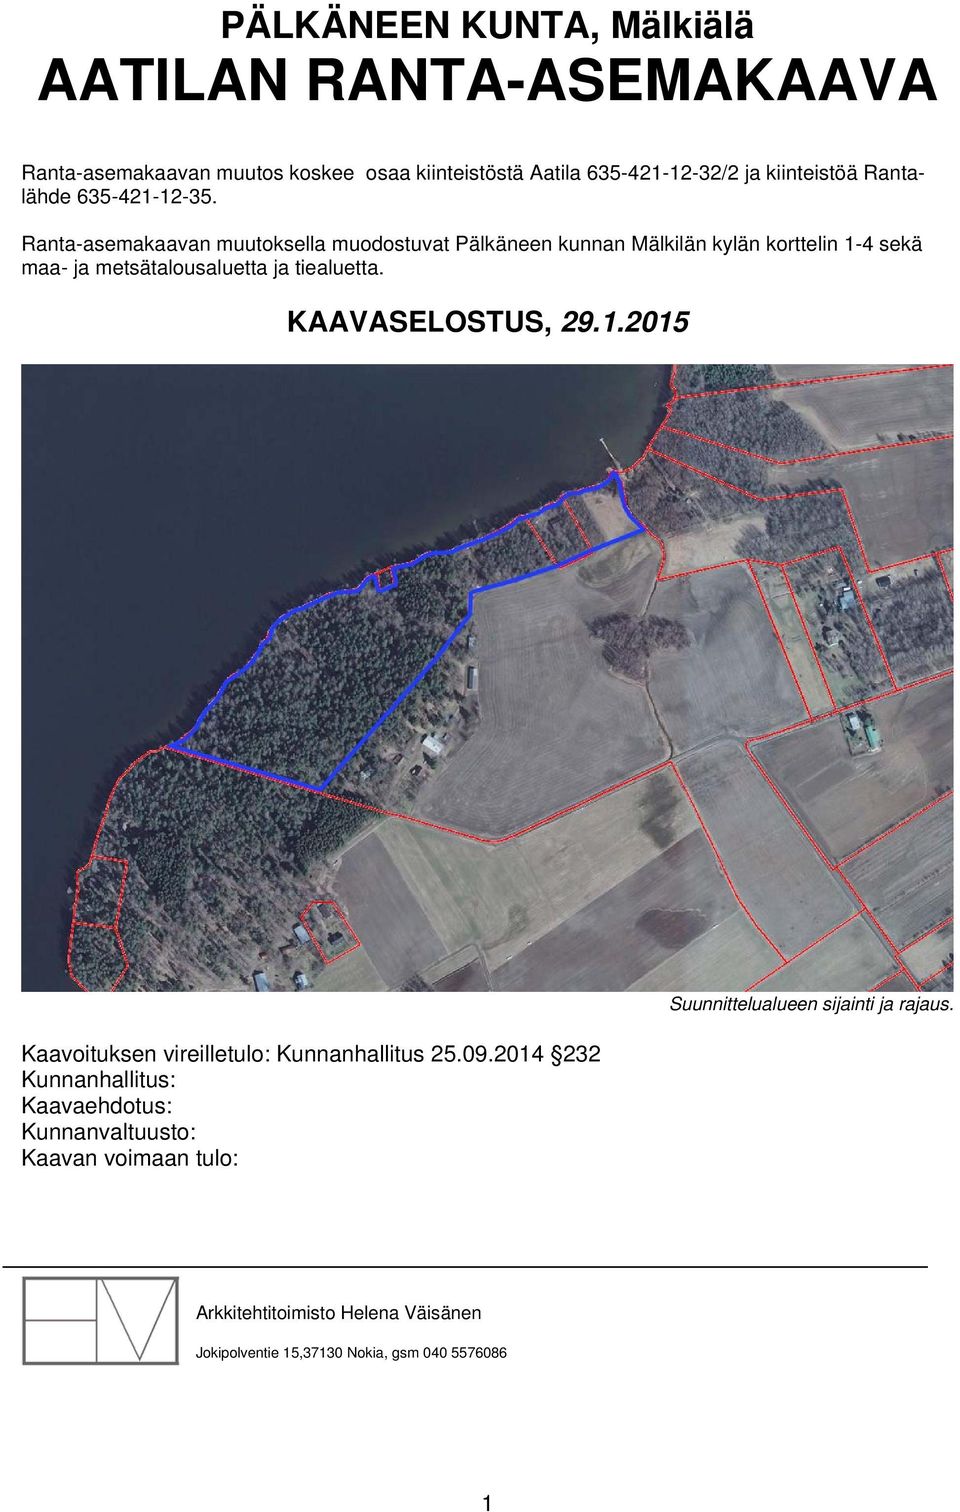 Ranta-asemakaavan muutoksella muodostuvat Pälkäneen kunnan Mälkilän kylän korttelin 1-4 sekä maa- ja metsätalousaluetta ja tiealuetta.